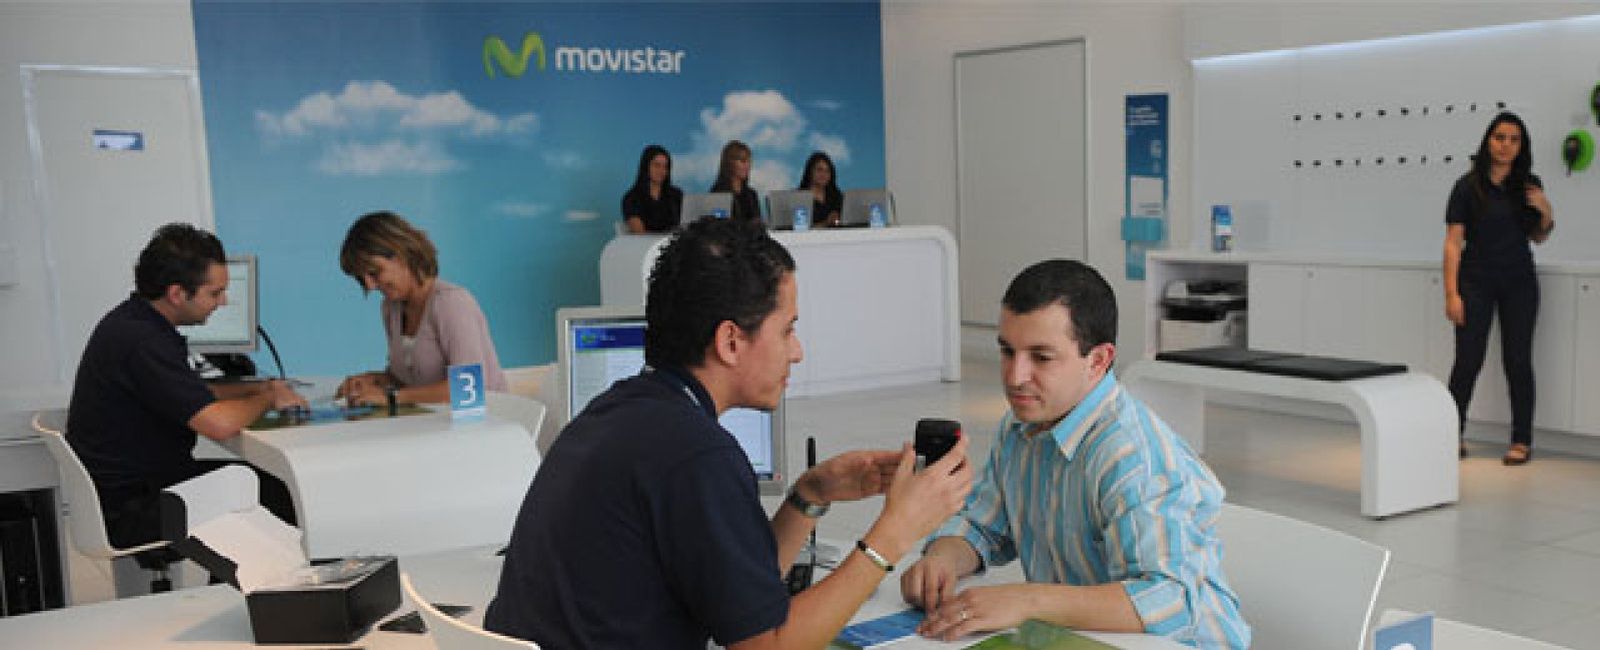 Foto: El cambio de Movistar: vuelve a ser la más valorada en banda ancha